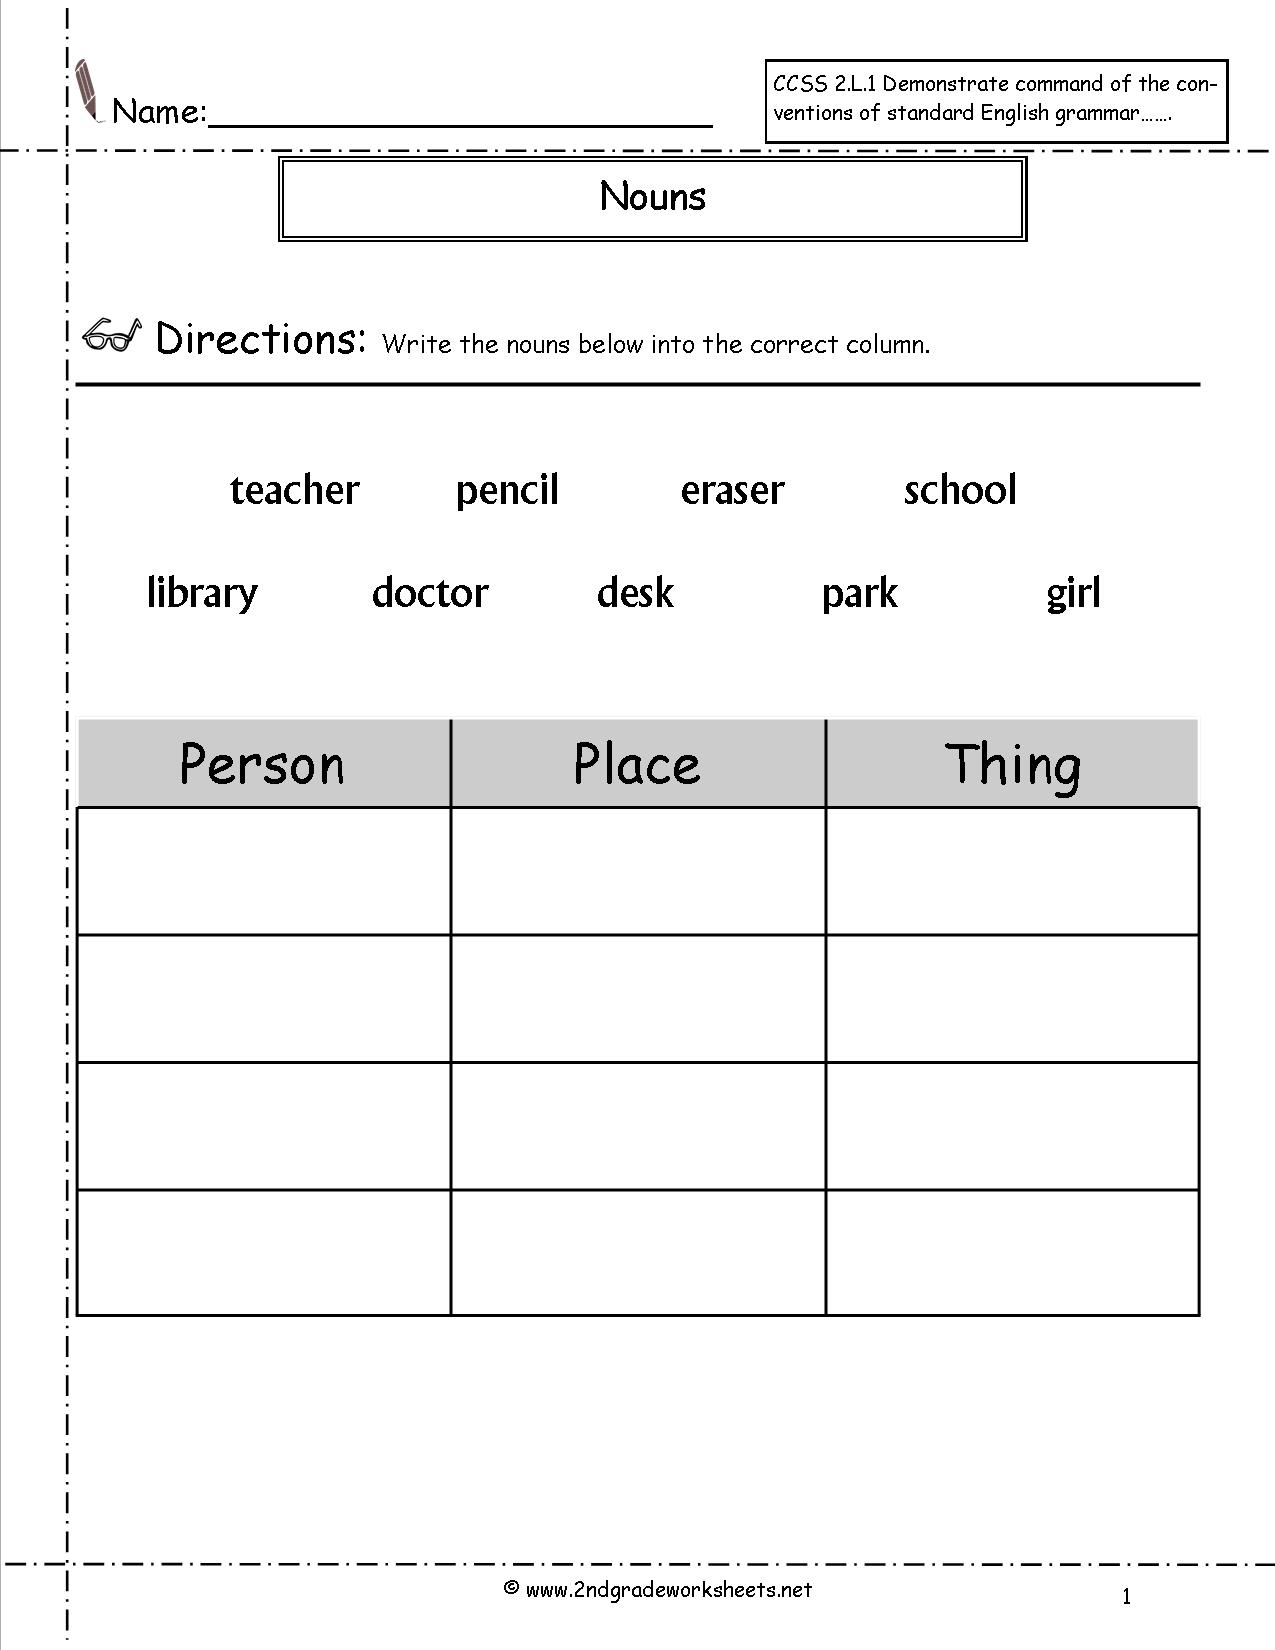 15 Best Images Of Noun Worksheets For Kindergarten Proper Nouns Worksheets 2nd Grade Free